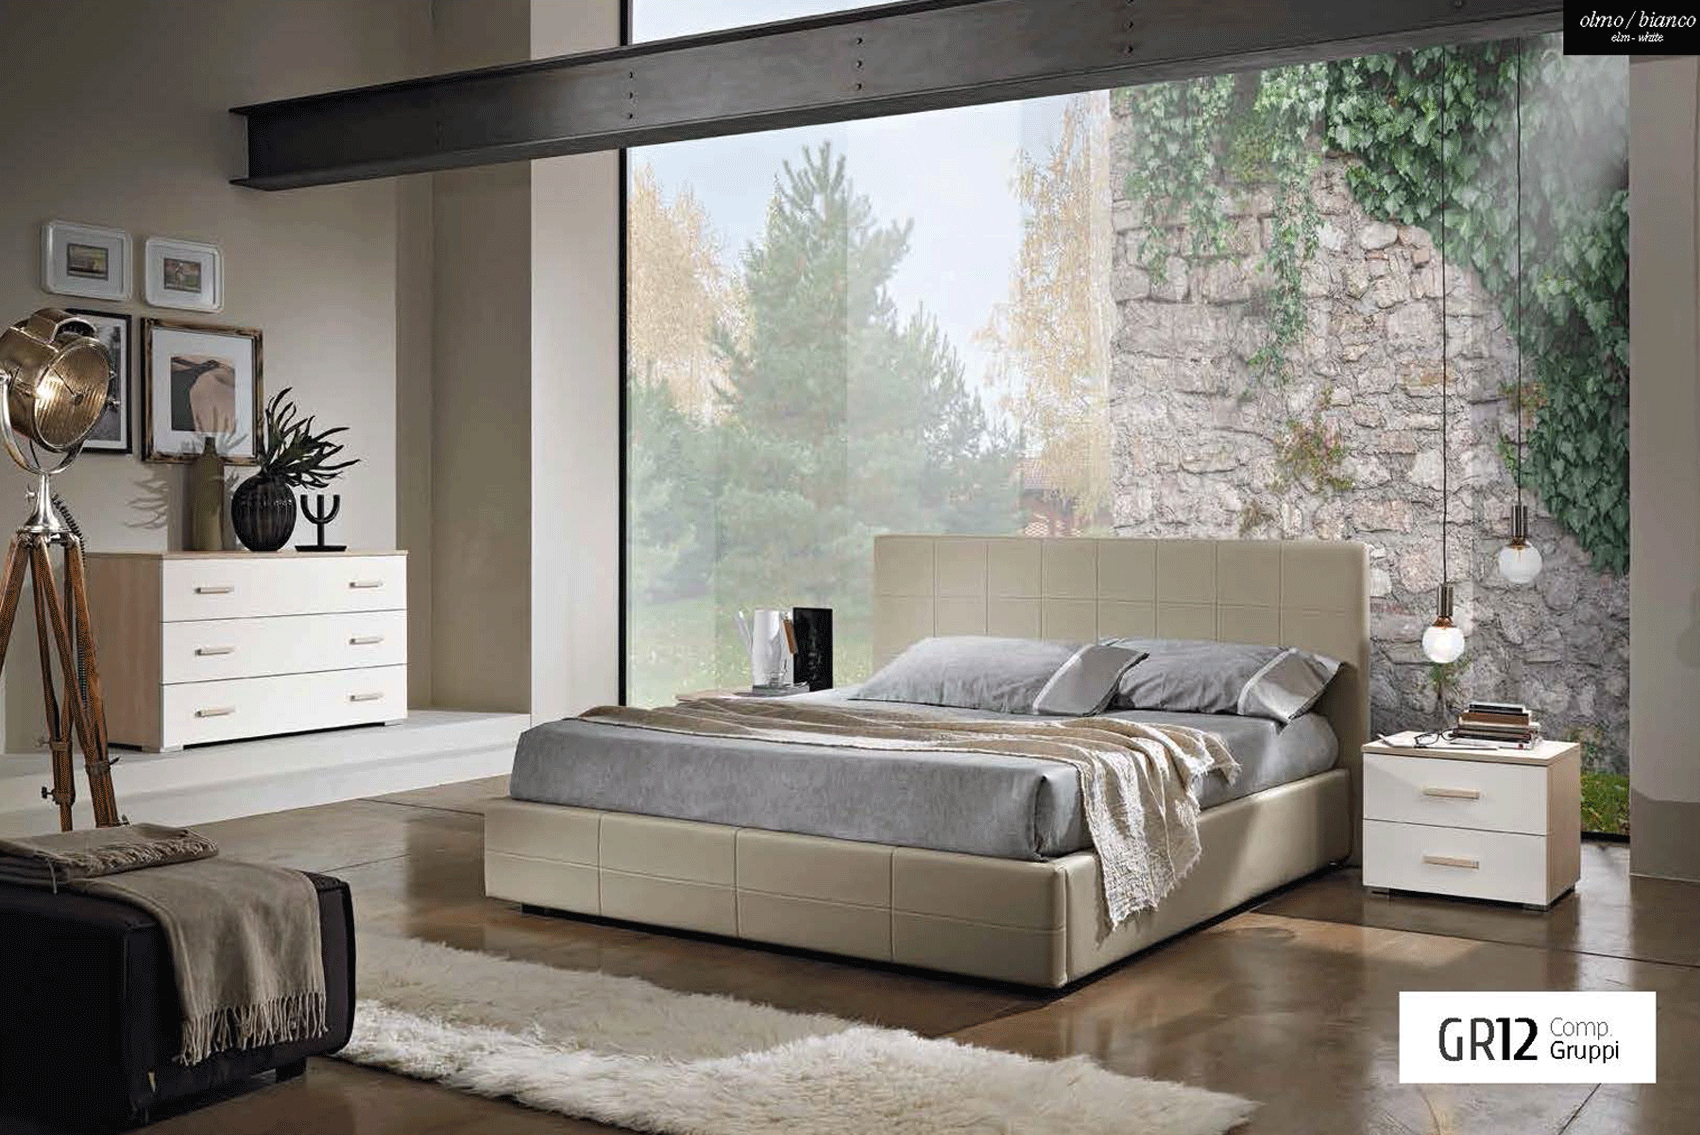 Bedroom Furniture Nightstands GR12